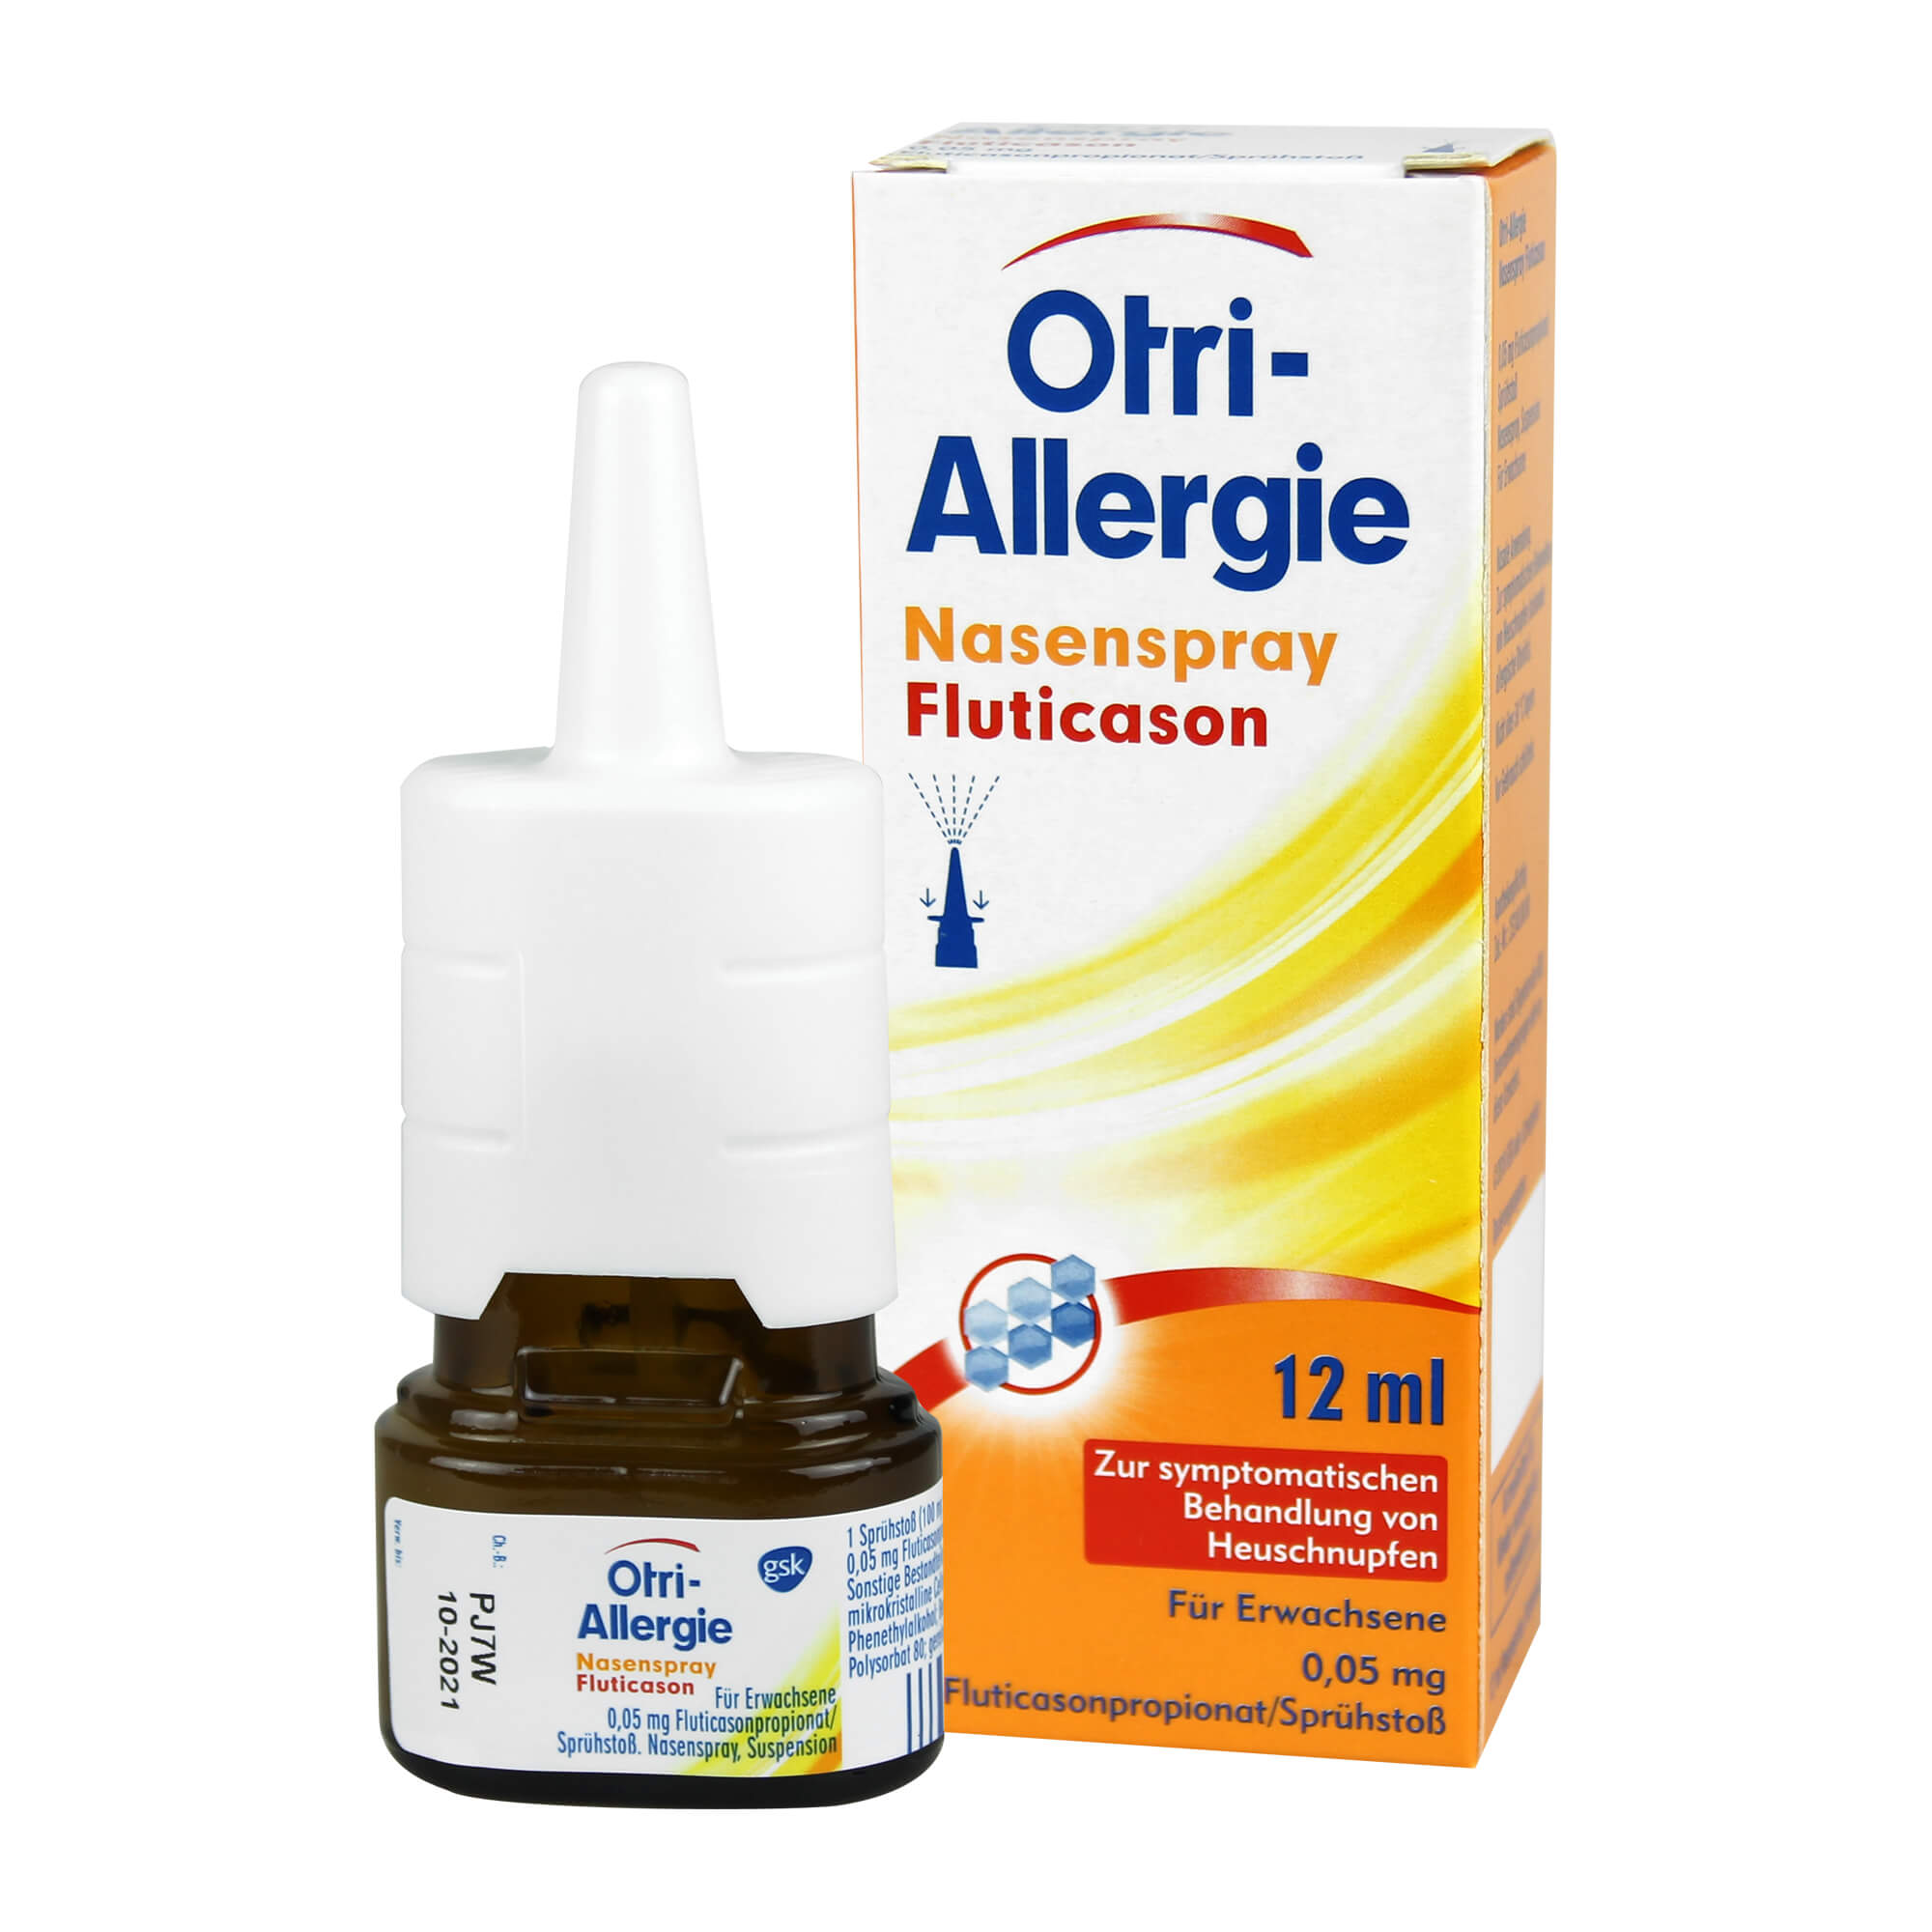 Zur Behandlung bei allergischer Rhinitis (Heuschnupfen).